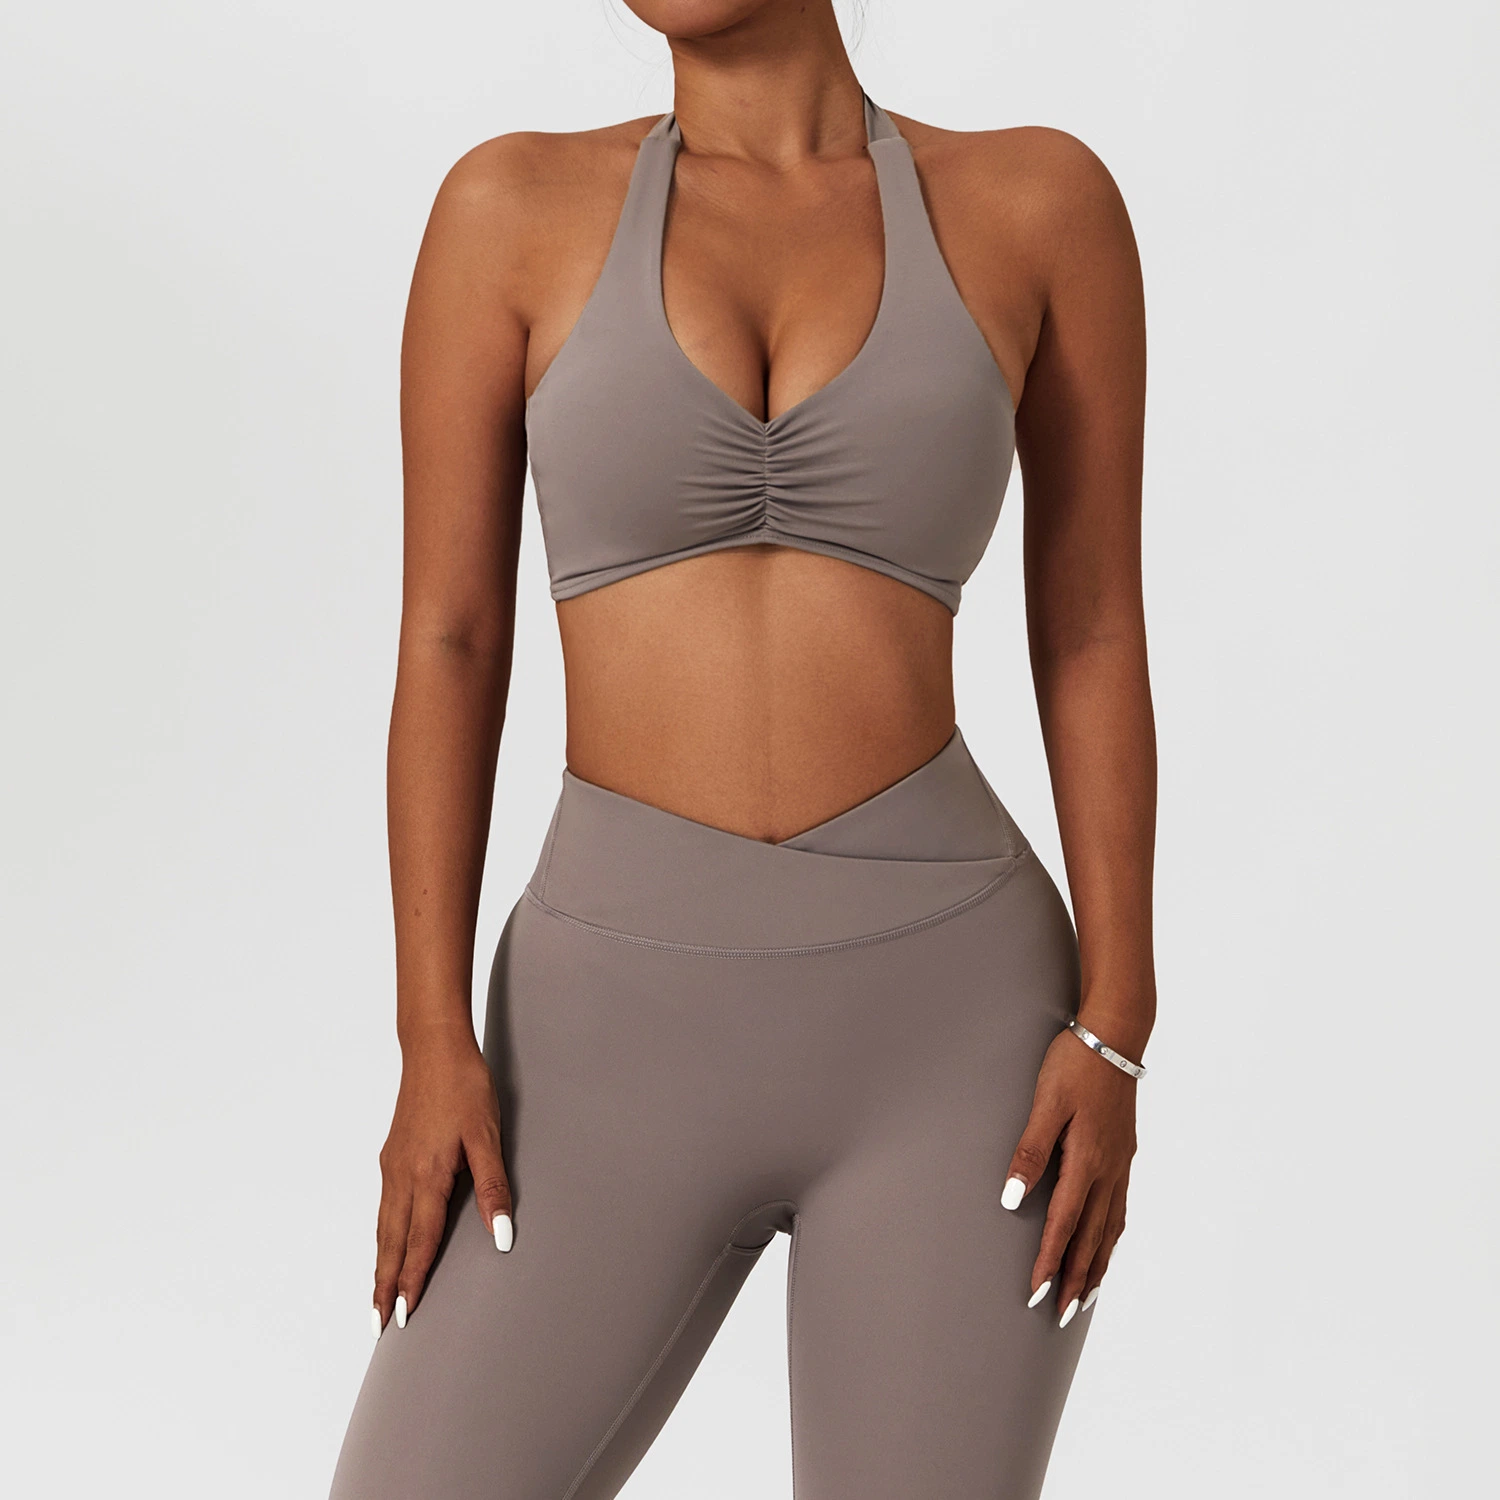 Treino de ginásio Compression Yoga Apparel vestuário Sportswear para mulher Fatos de ioga para ginásio